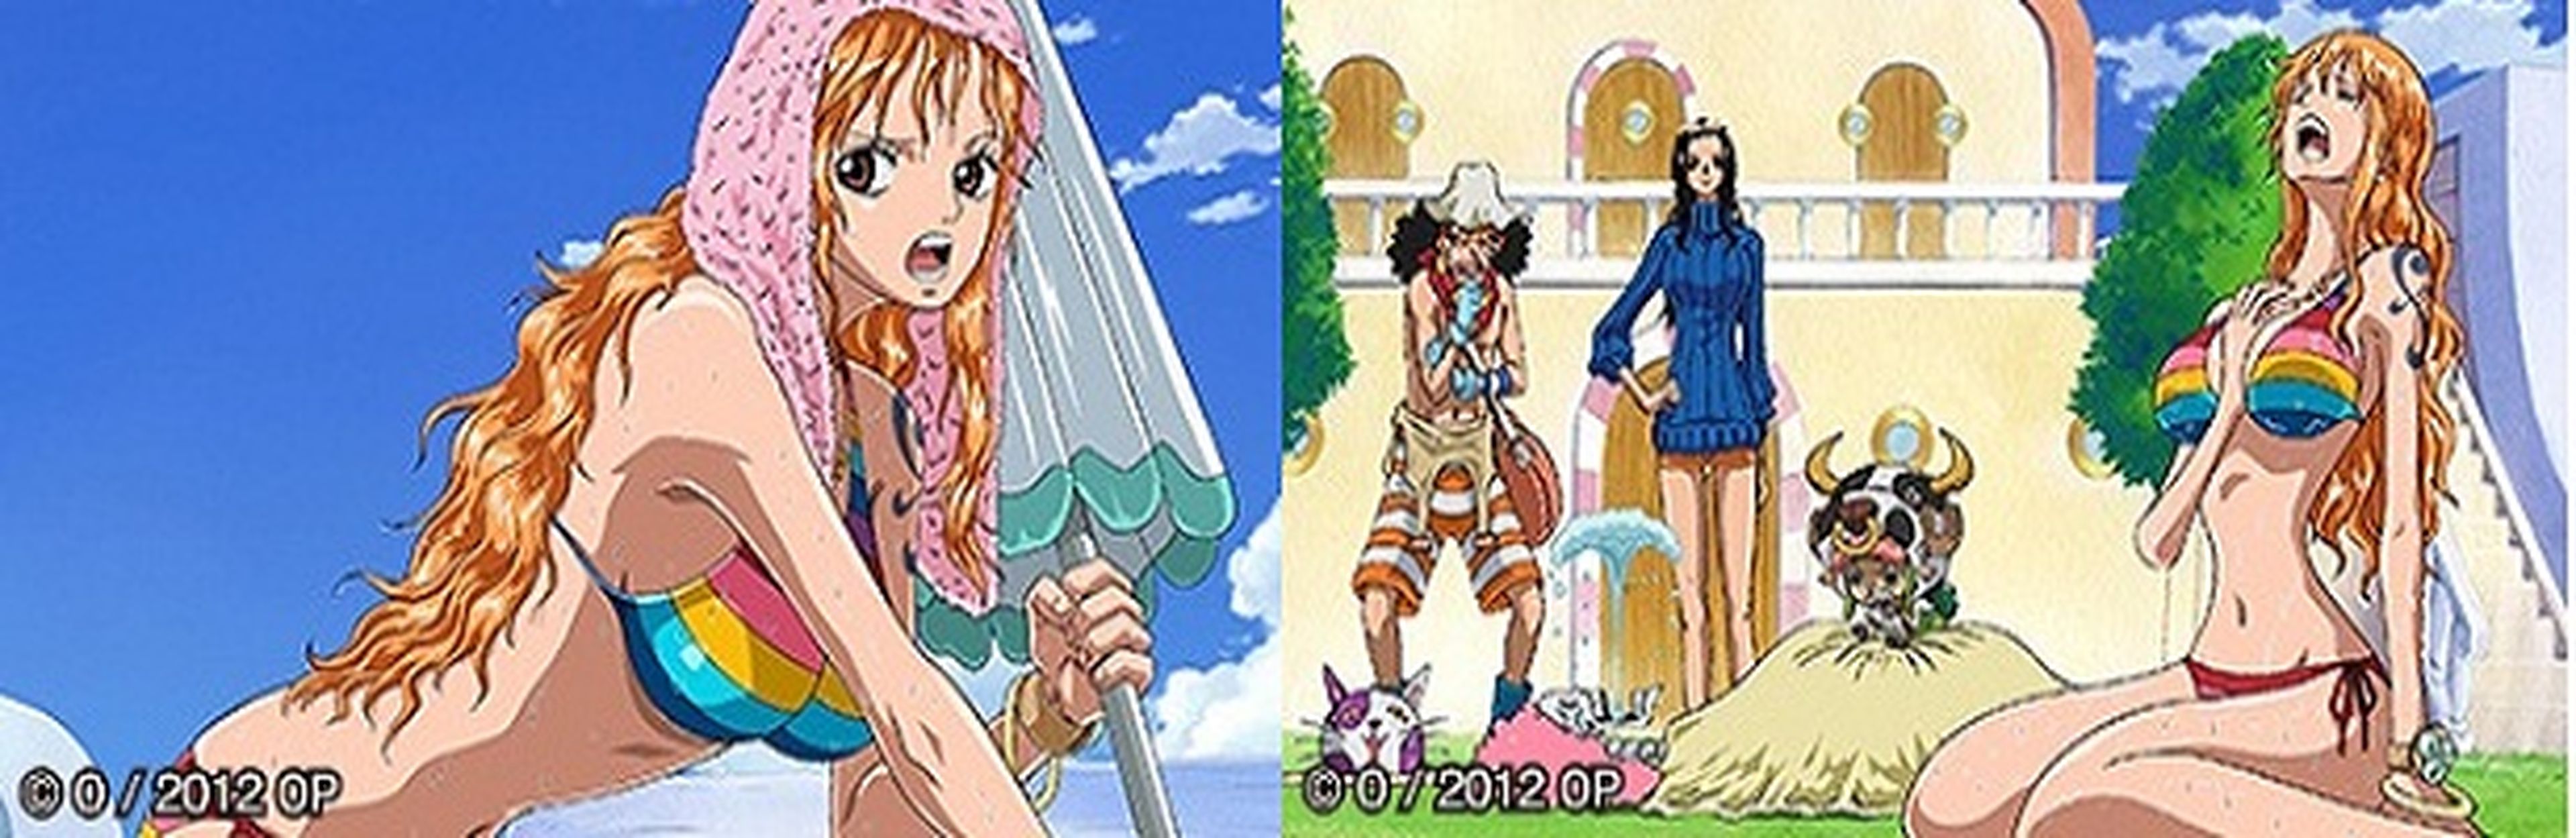 Anime especial de One Piece